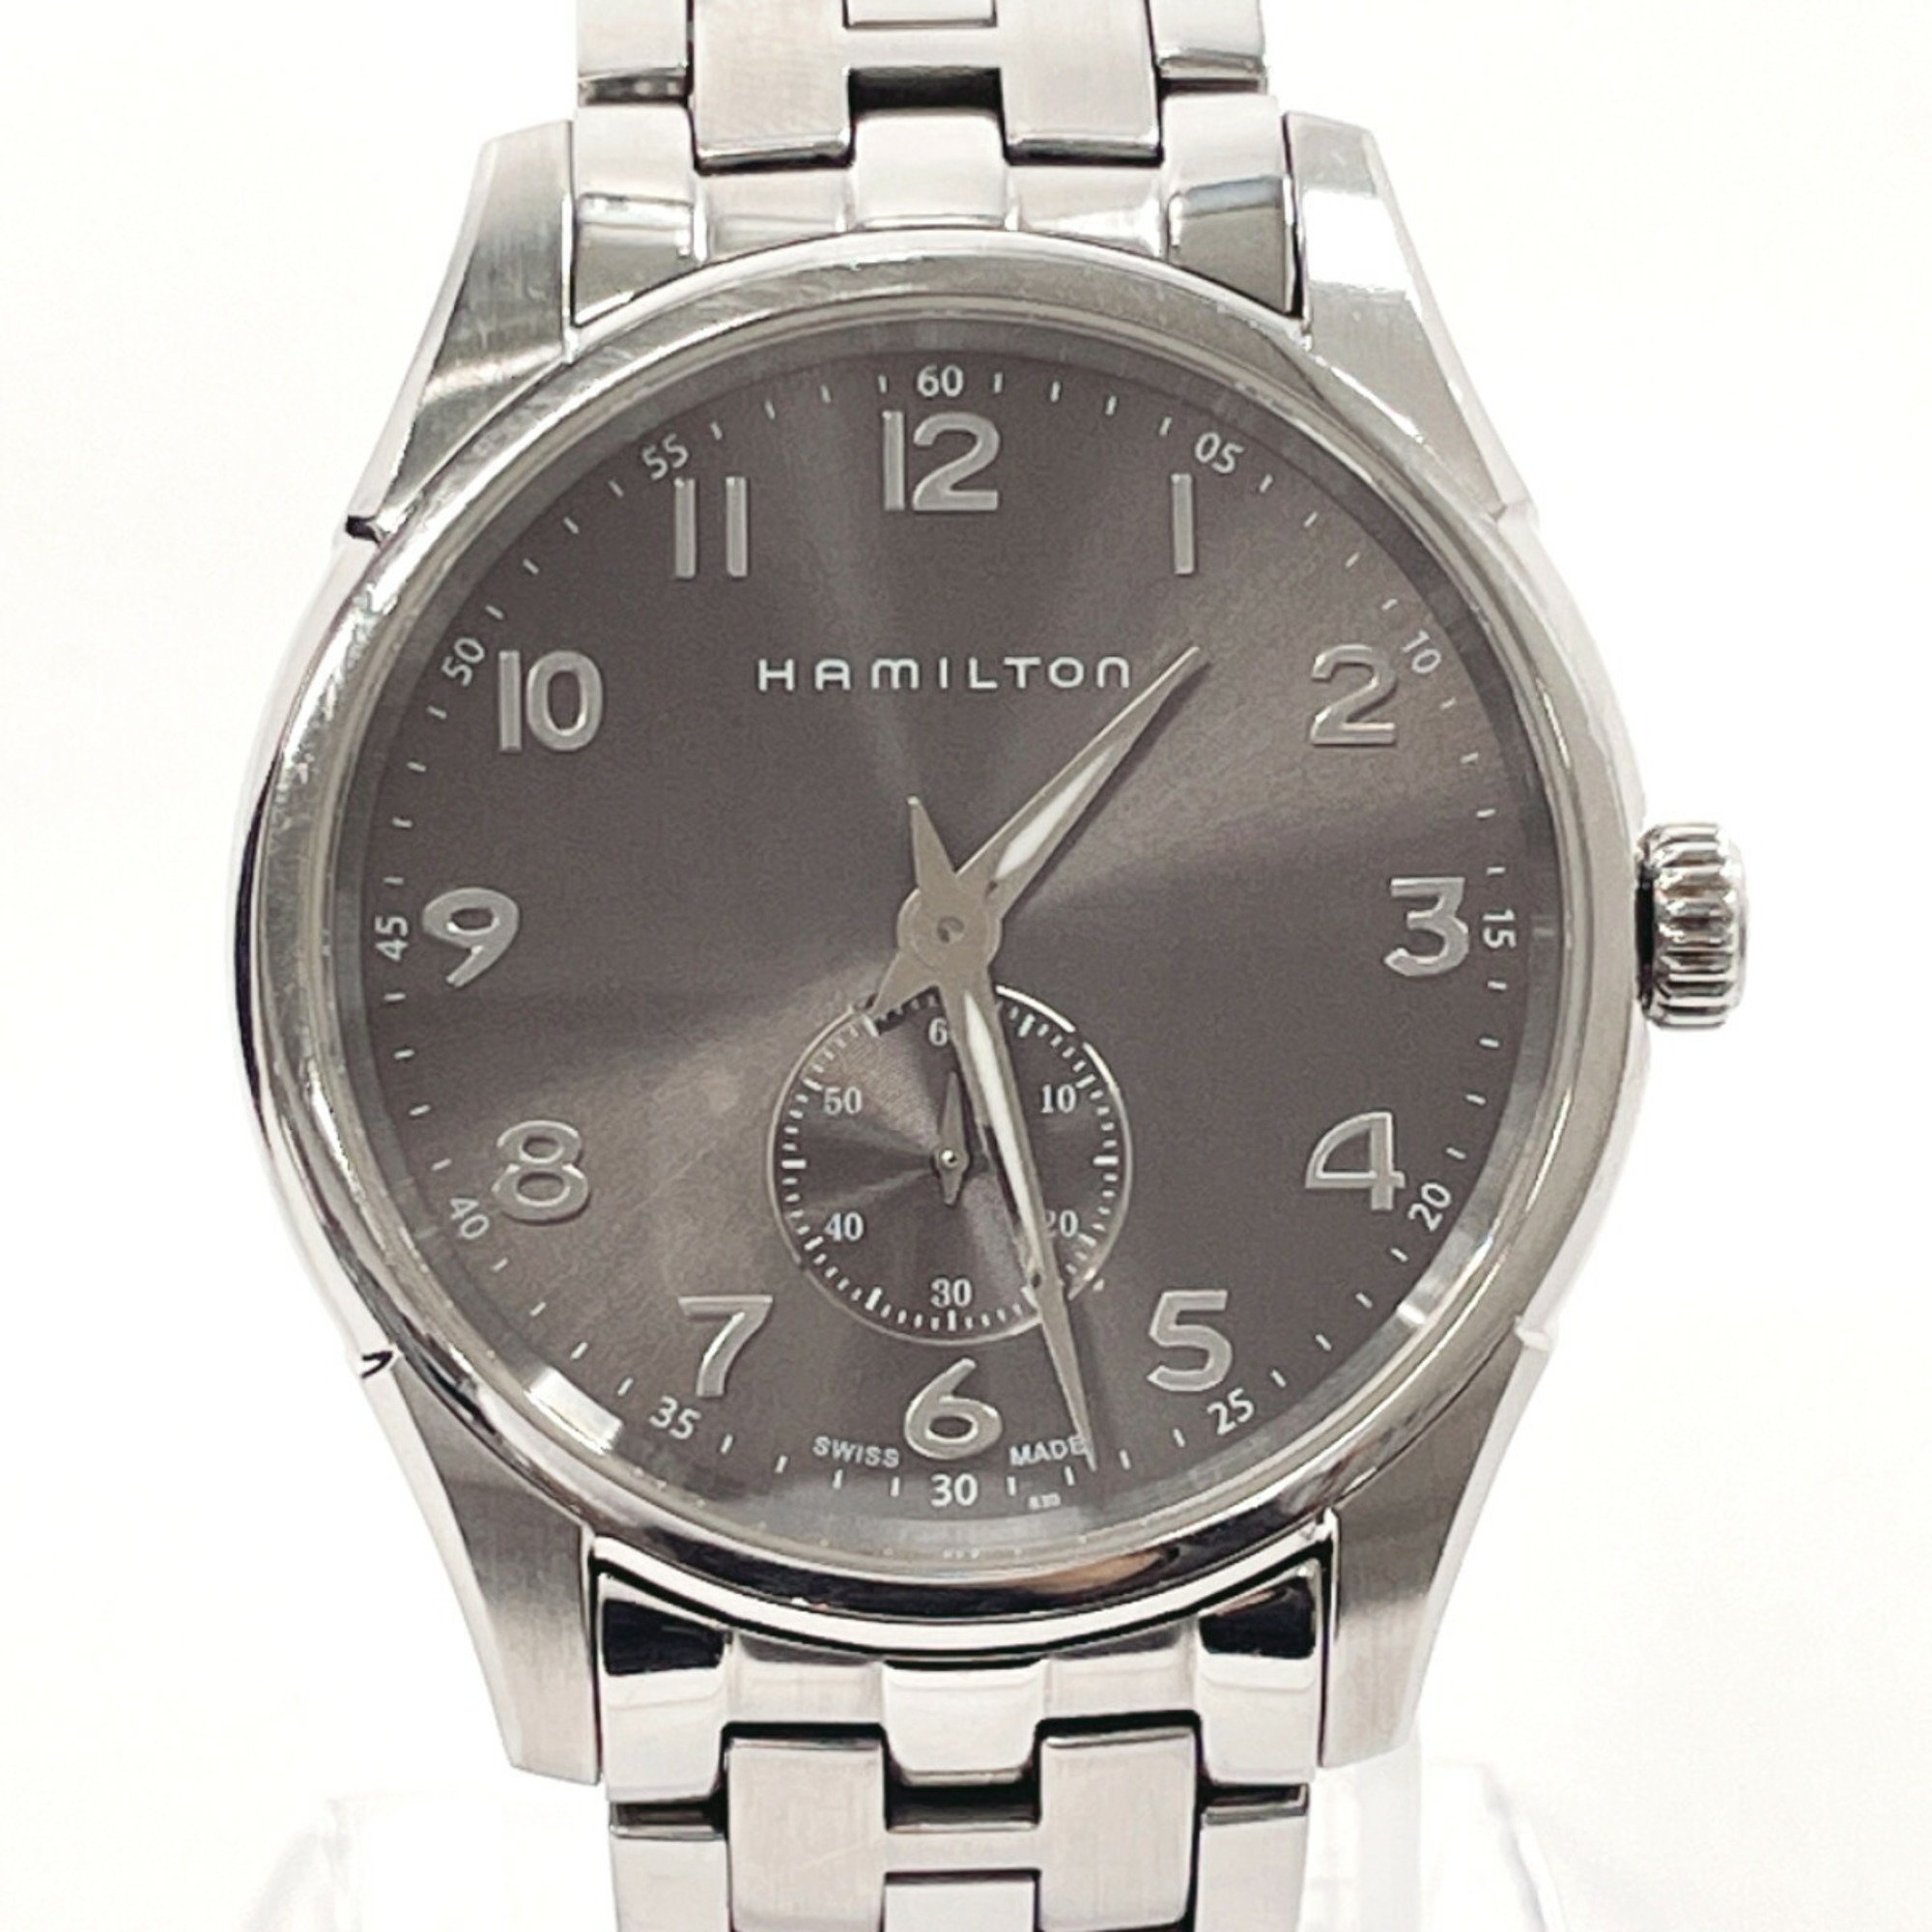 HAMILTON Hamilton Jazzmaster Thinline H384110 Watch Stainless Steel Silver Quartz Brown Dial Men's N3120029